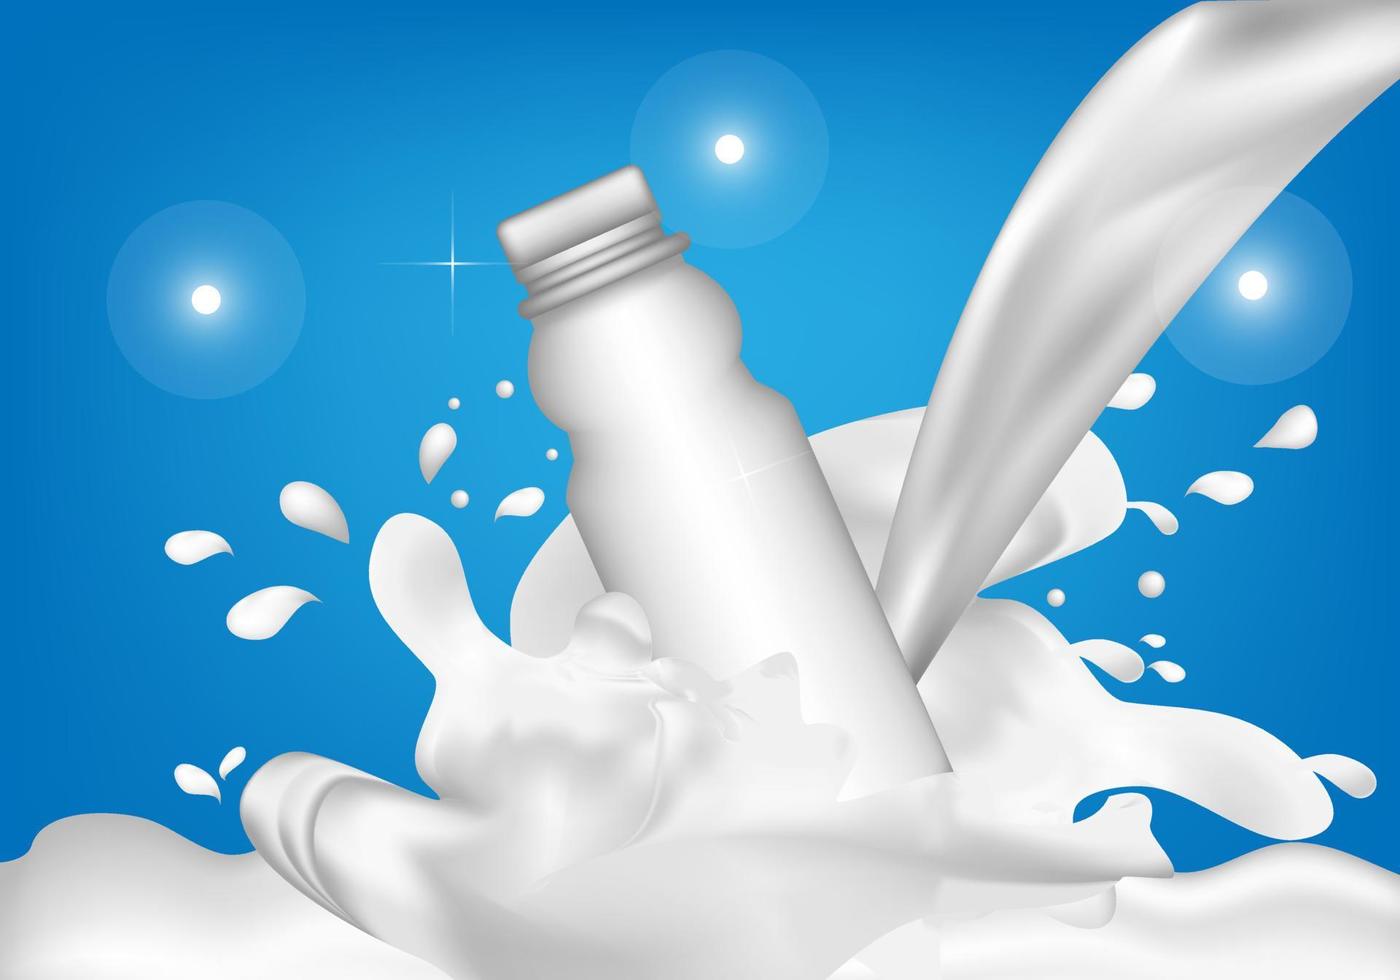 glasflaskformade produkter och häll mjölk i sidan av flaskan för att skapa en diffusion av vatten. vektor